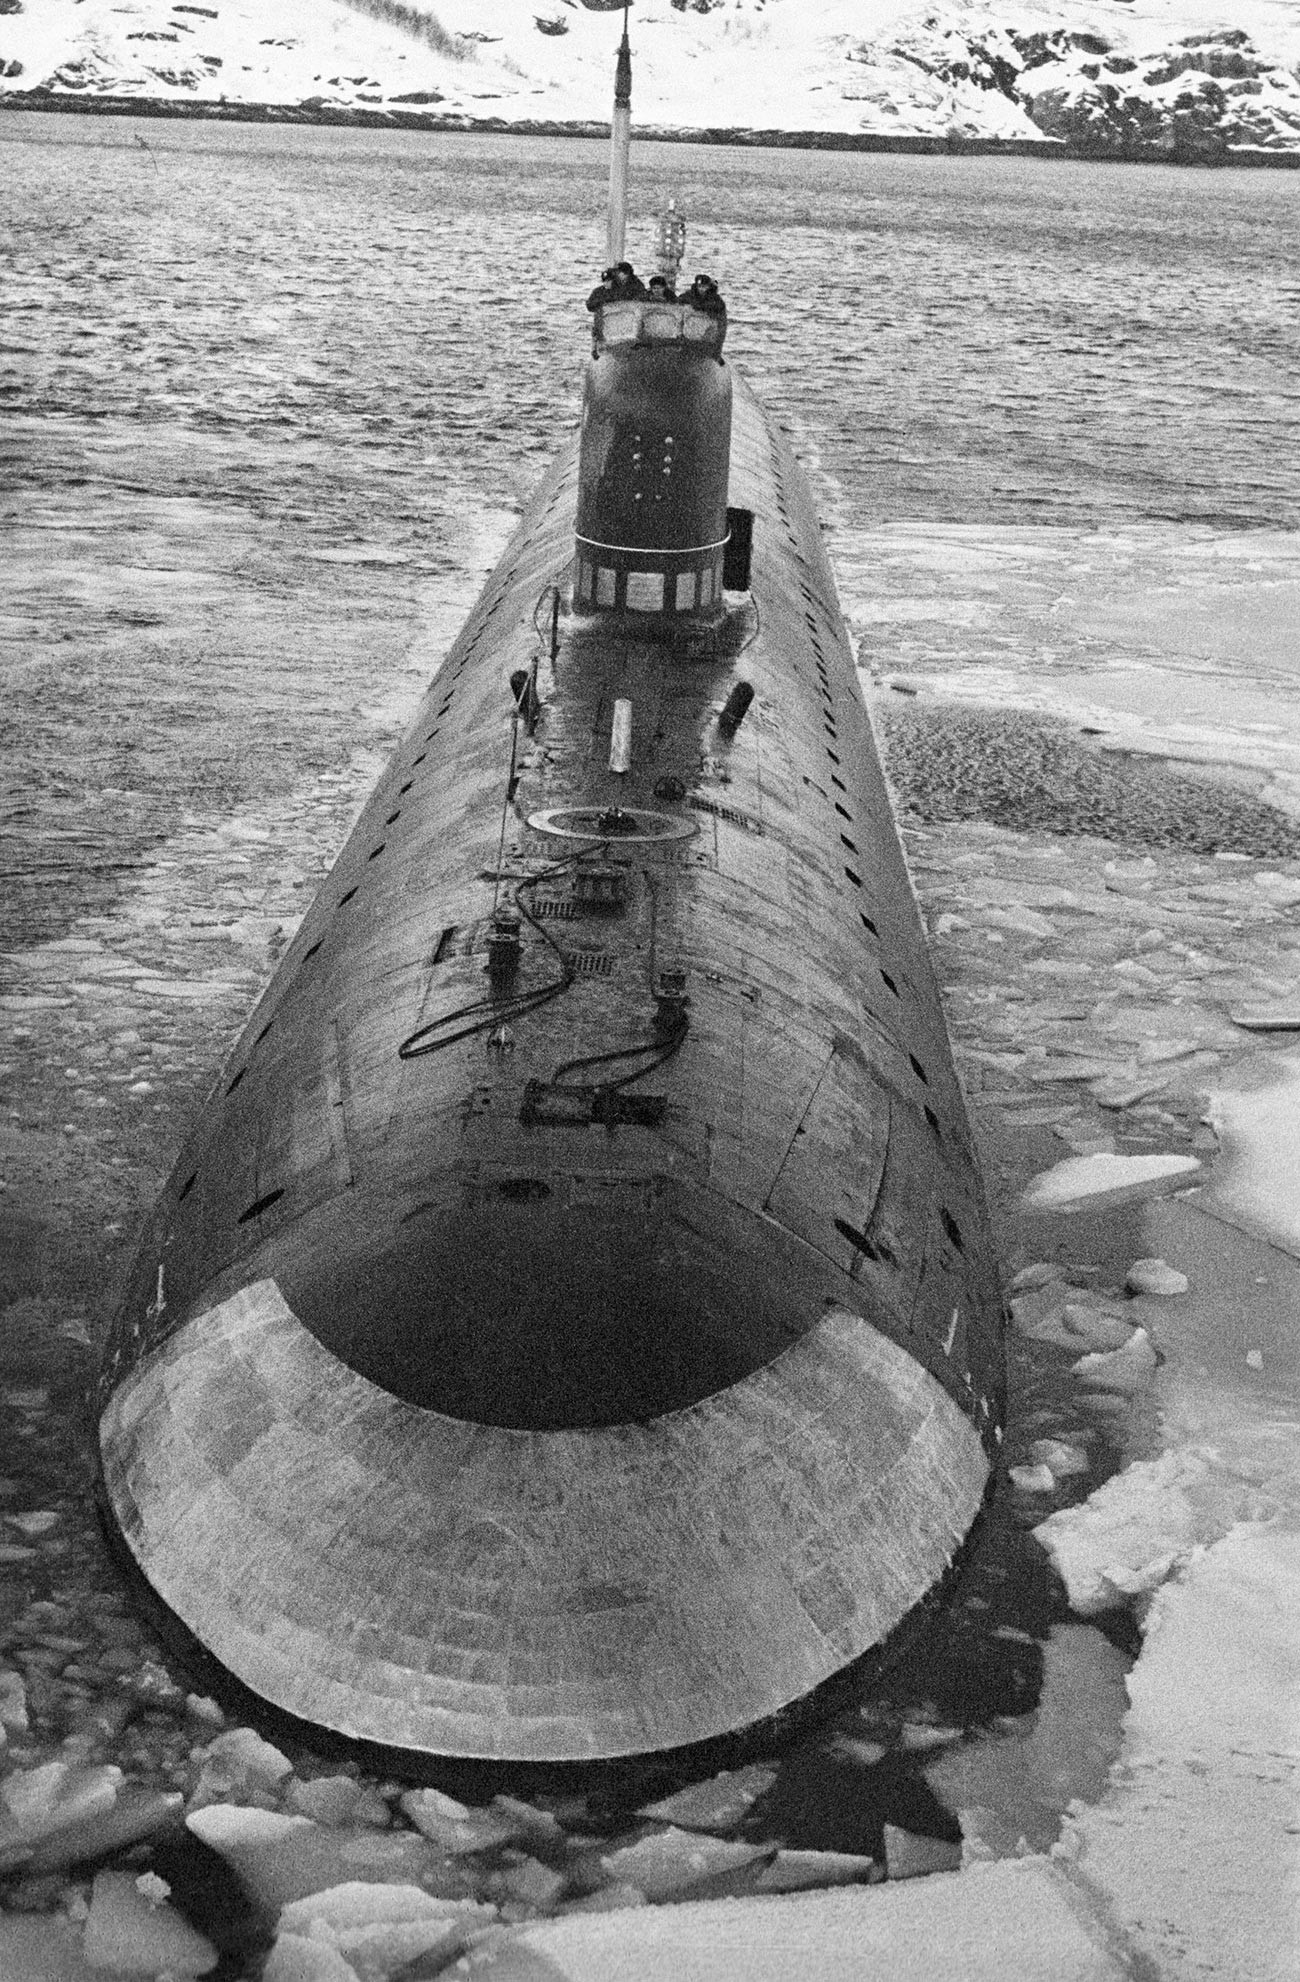 Sovjetska jedrska podmornica Leninski komsomol